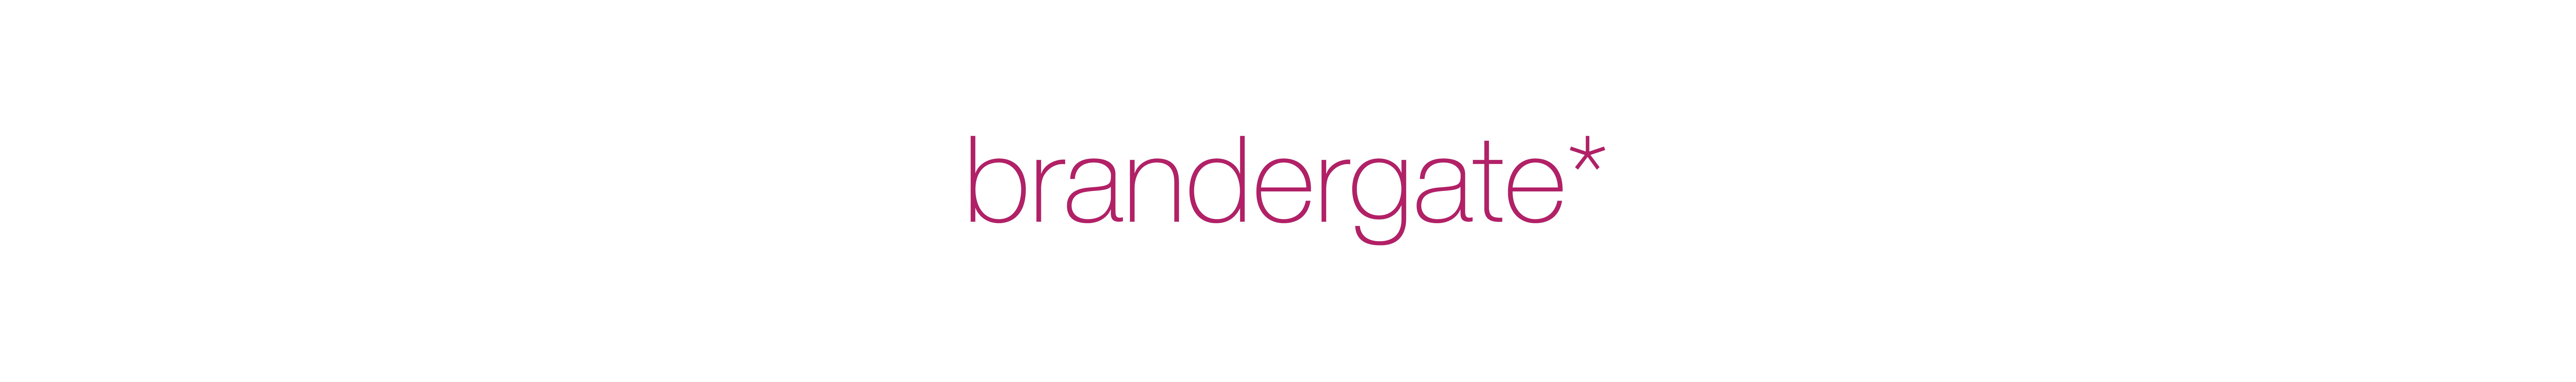 Brandergate *'s profile banner